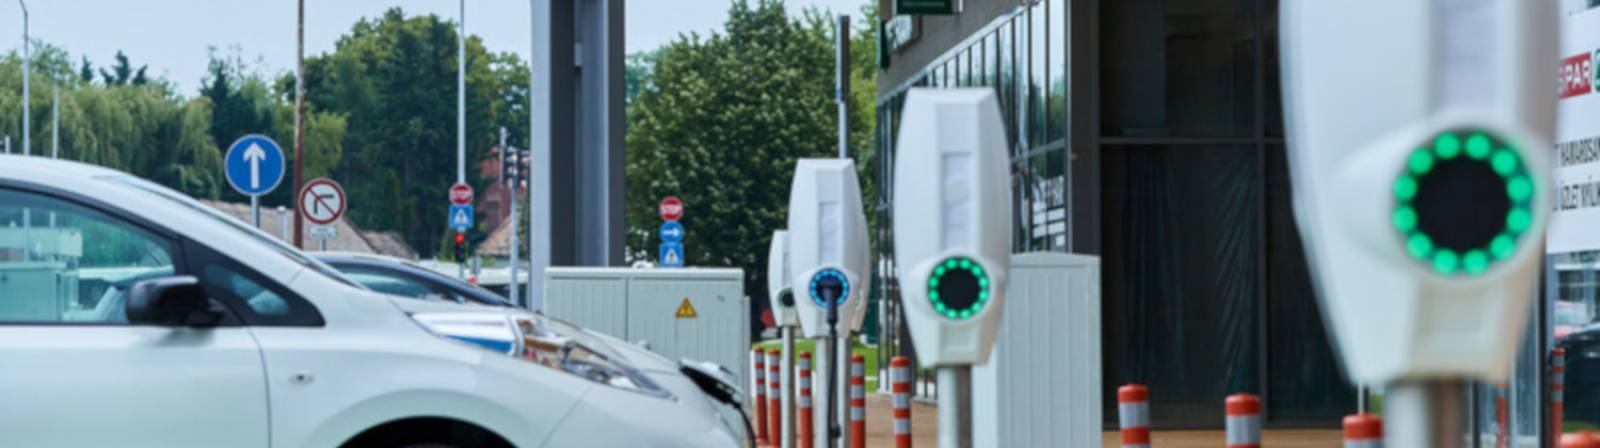 Installation d'une borne de recharge pour véhicules électriques par un  professionnel Qualifelec près de chez vous à proximité d'Aix en Provence et  Marseille - Came Automatisations Services - AS13